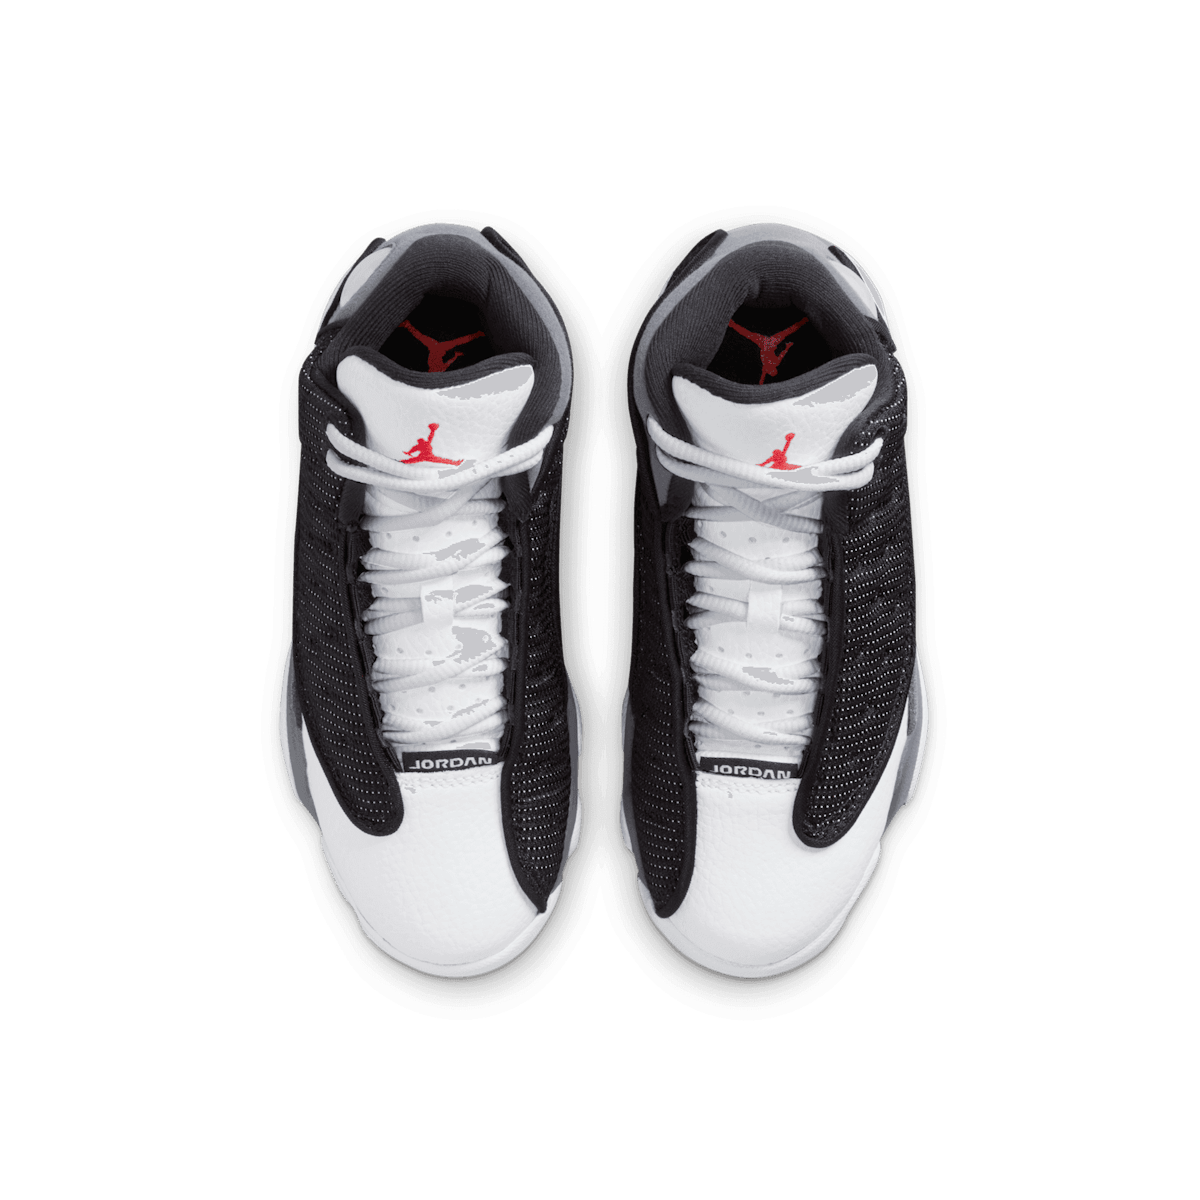 Air Jordan 13 Retro Black Flint (PS) Angle 1